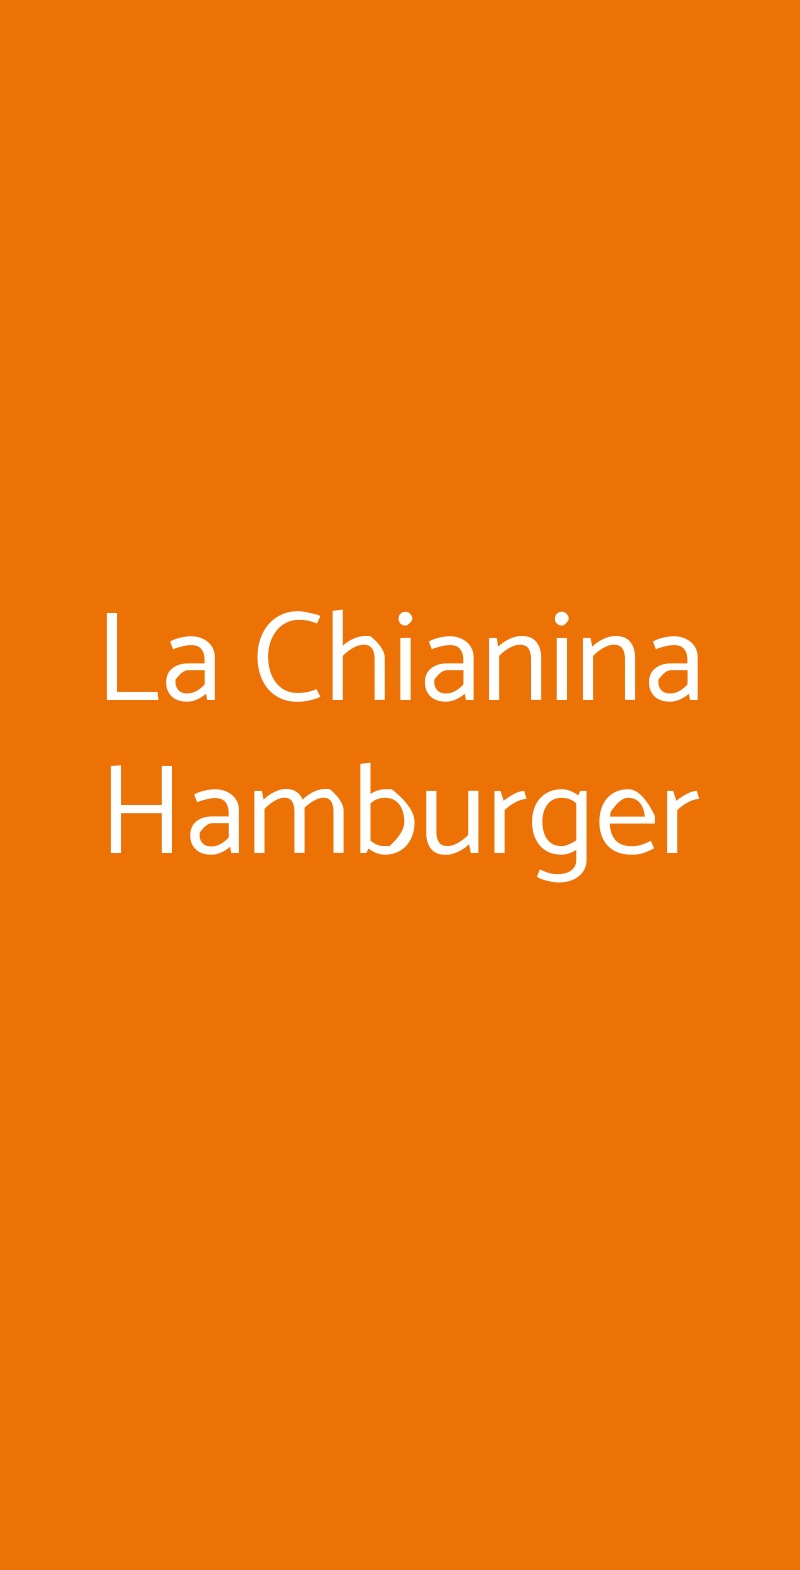 La Chianina Hamburger Genova menù 1 pagina